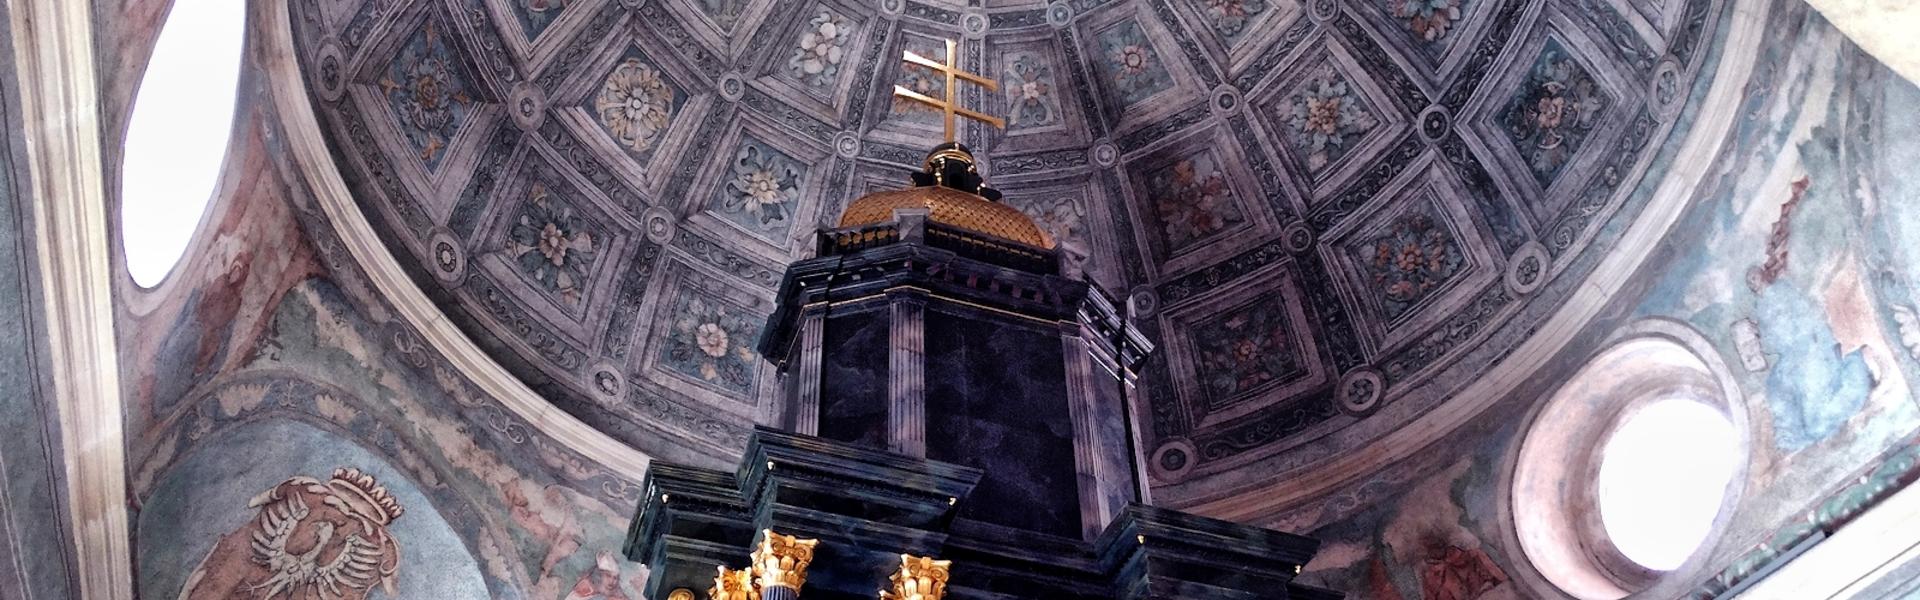 Zdjęcie wnętrza kopuły kaplicy Grobu Bożego w bazylice miechowskiej.